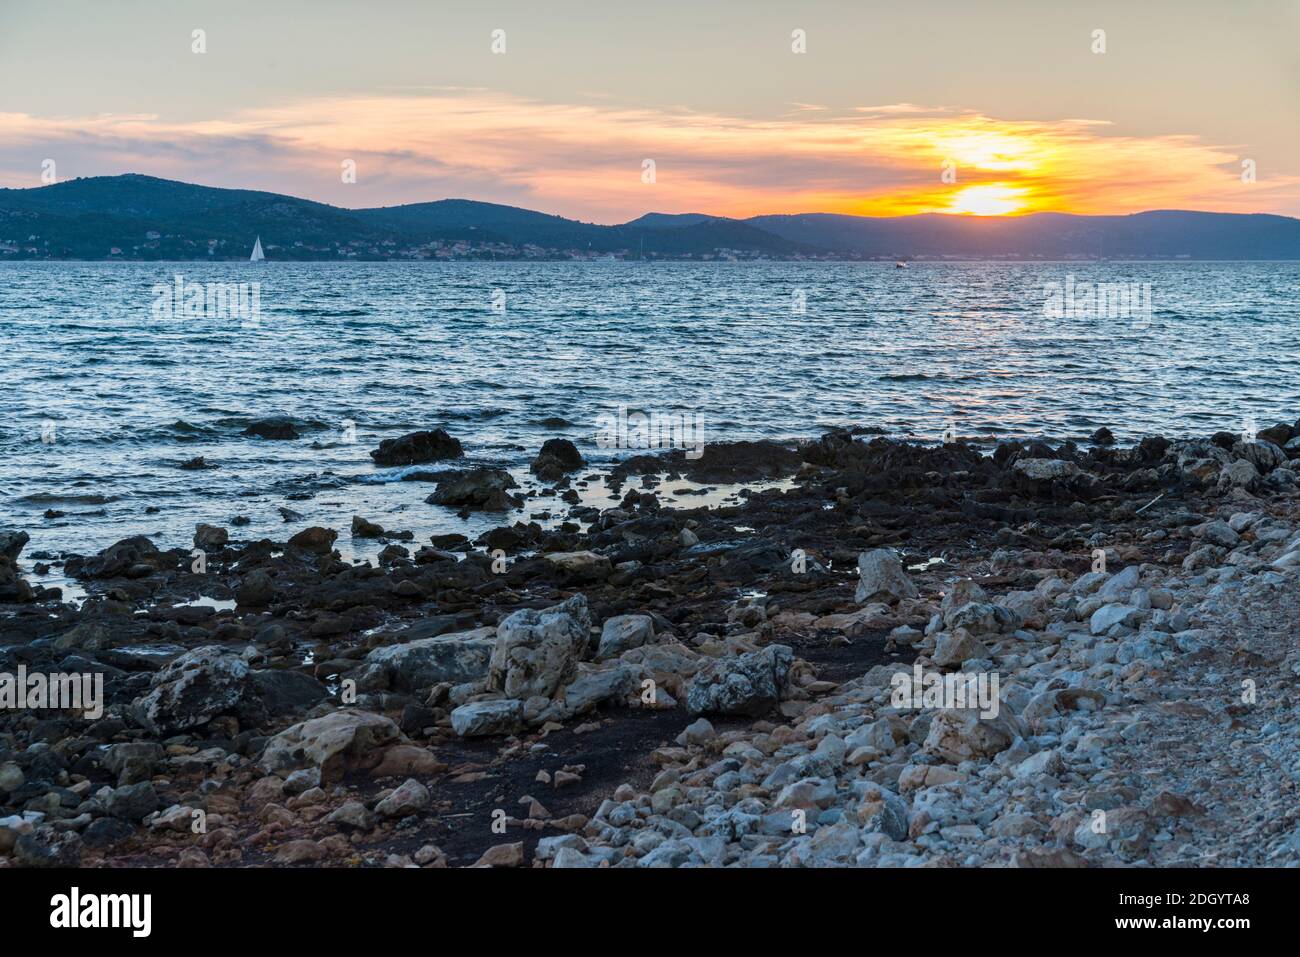 Vue sur l'île de Pašman, depuis la côte dalmate dans la municipalité de Biograd na Moru, en Croatie, sur la mer Adriatique, au coucher du soleil. Banque D'Images